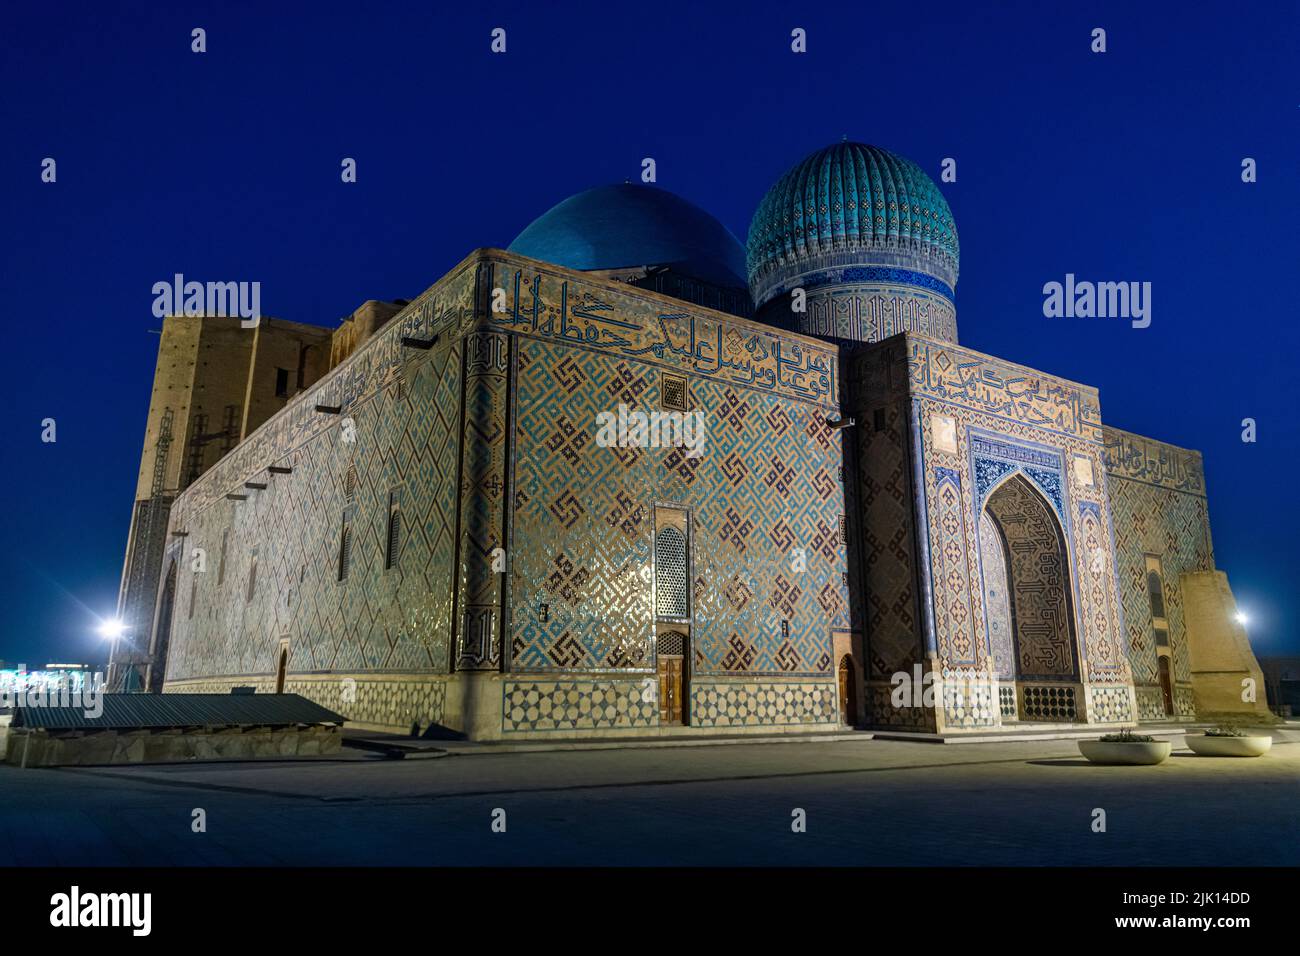 Nachtaufnahme des Mausoleums von Khoja Ahmed Yasawi, UNESCO-Weltkulturerbe, Turkistan, Kasachstan, Zentralasien, Asien Stockfoto